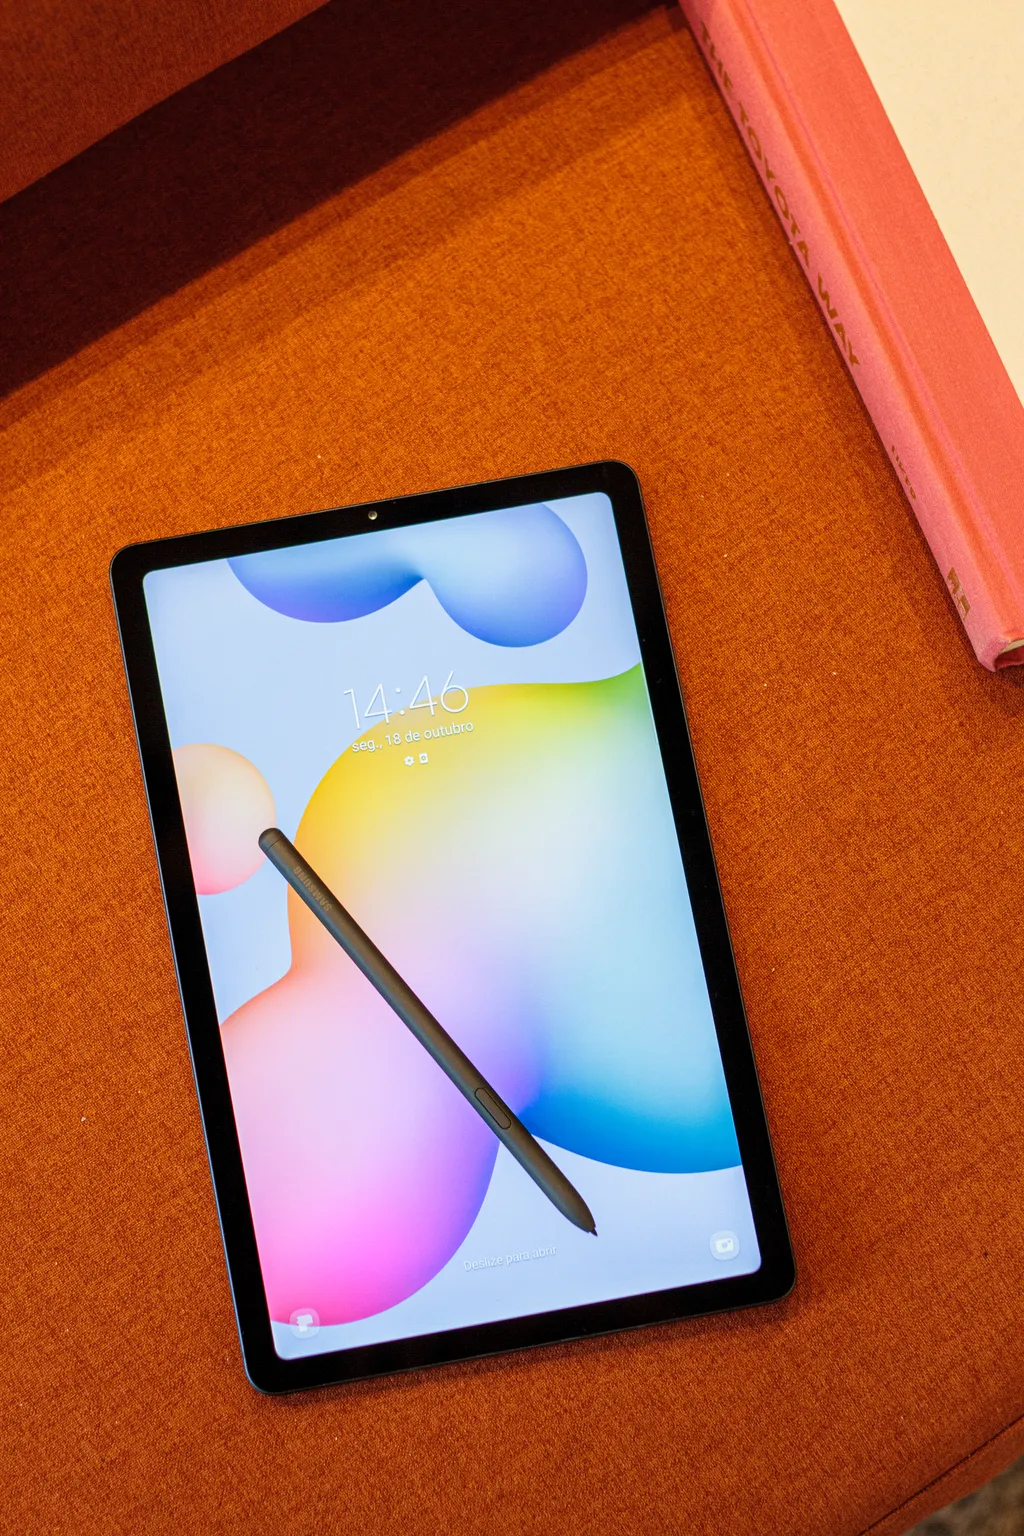 Tablet utilizado no experimento foi o Galaxy Tab S6 Lite, da Samsung (Imagem: Ivo Meneghel Jr/Canaltech)